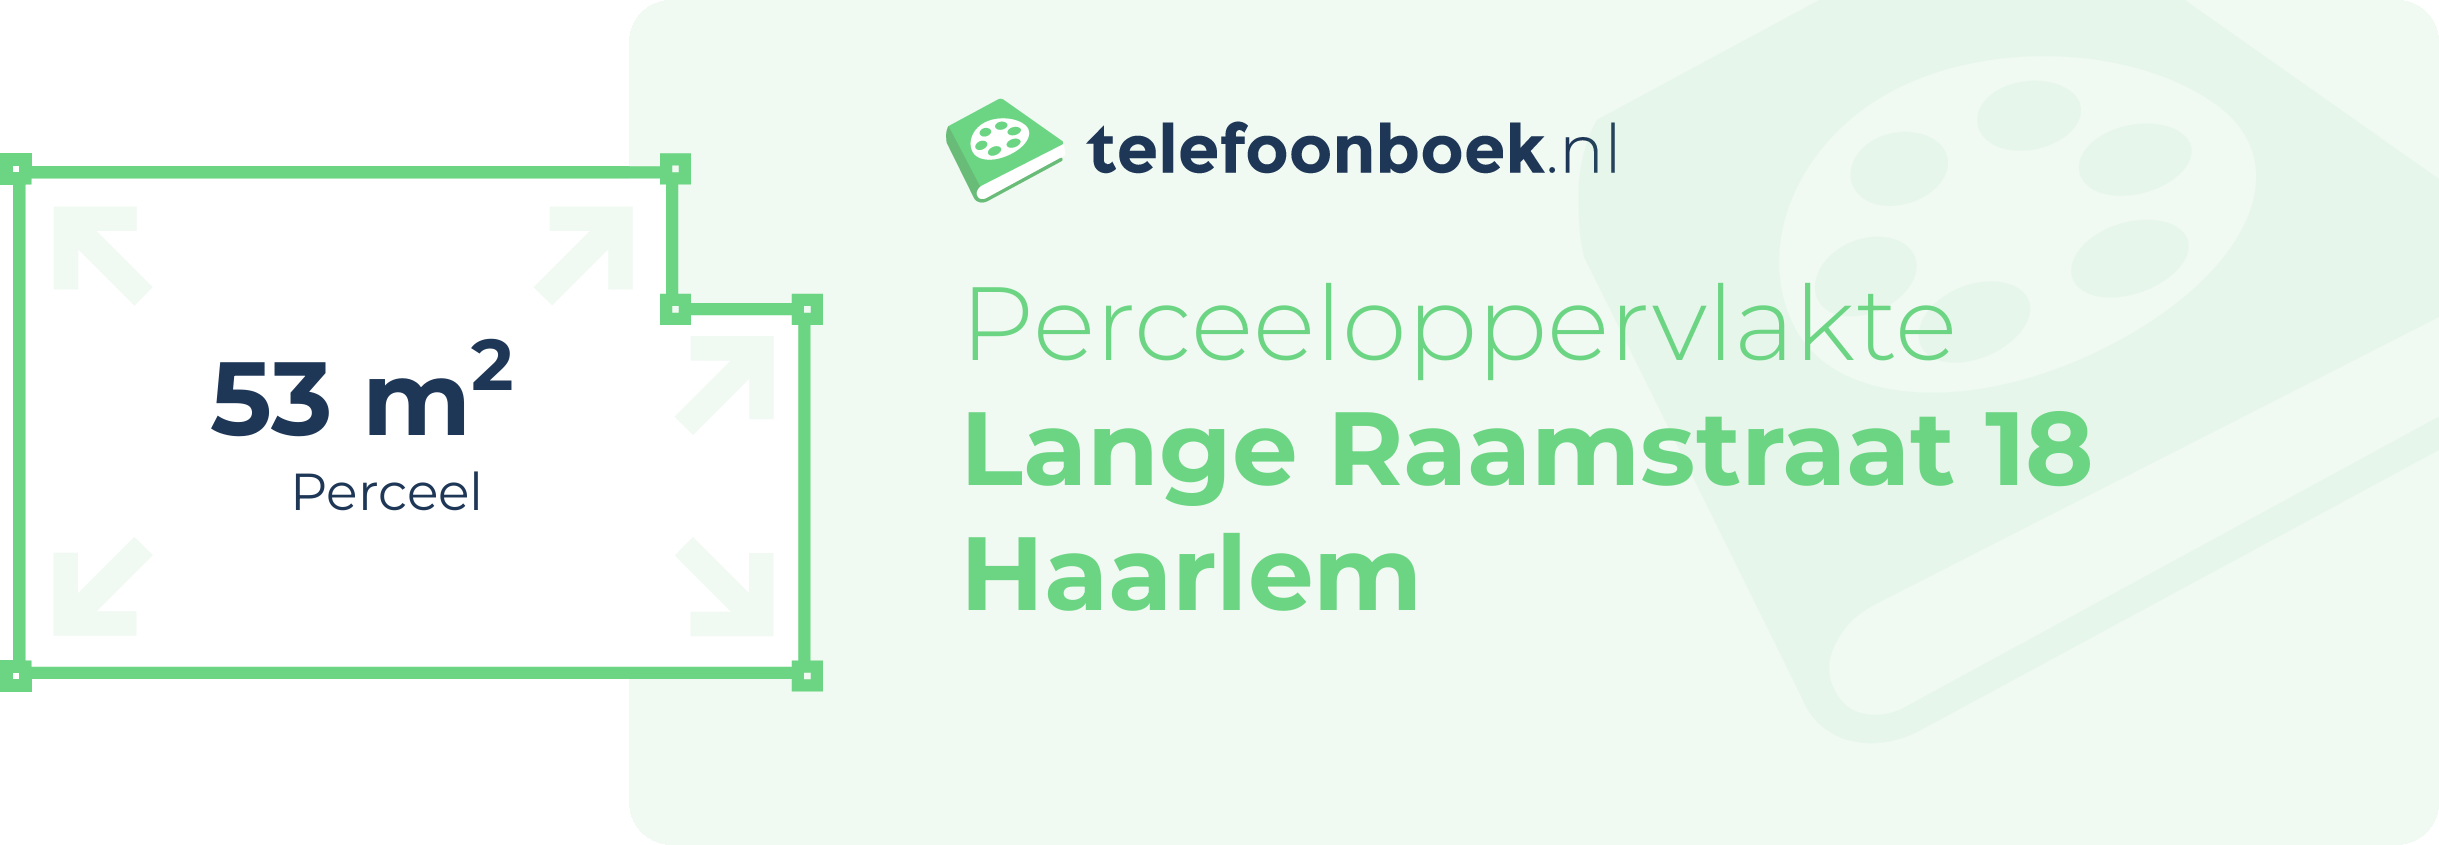 Perceeloppervlakte Lange Raamstraat 18 Haarlem